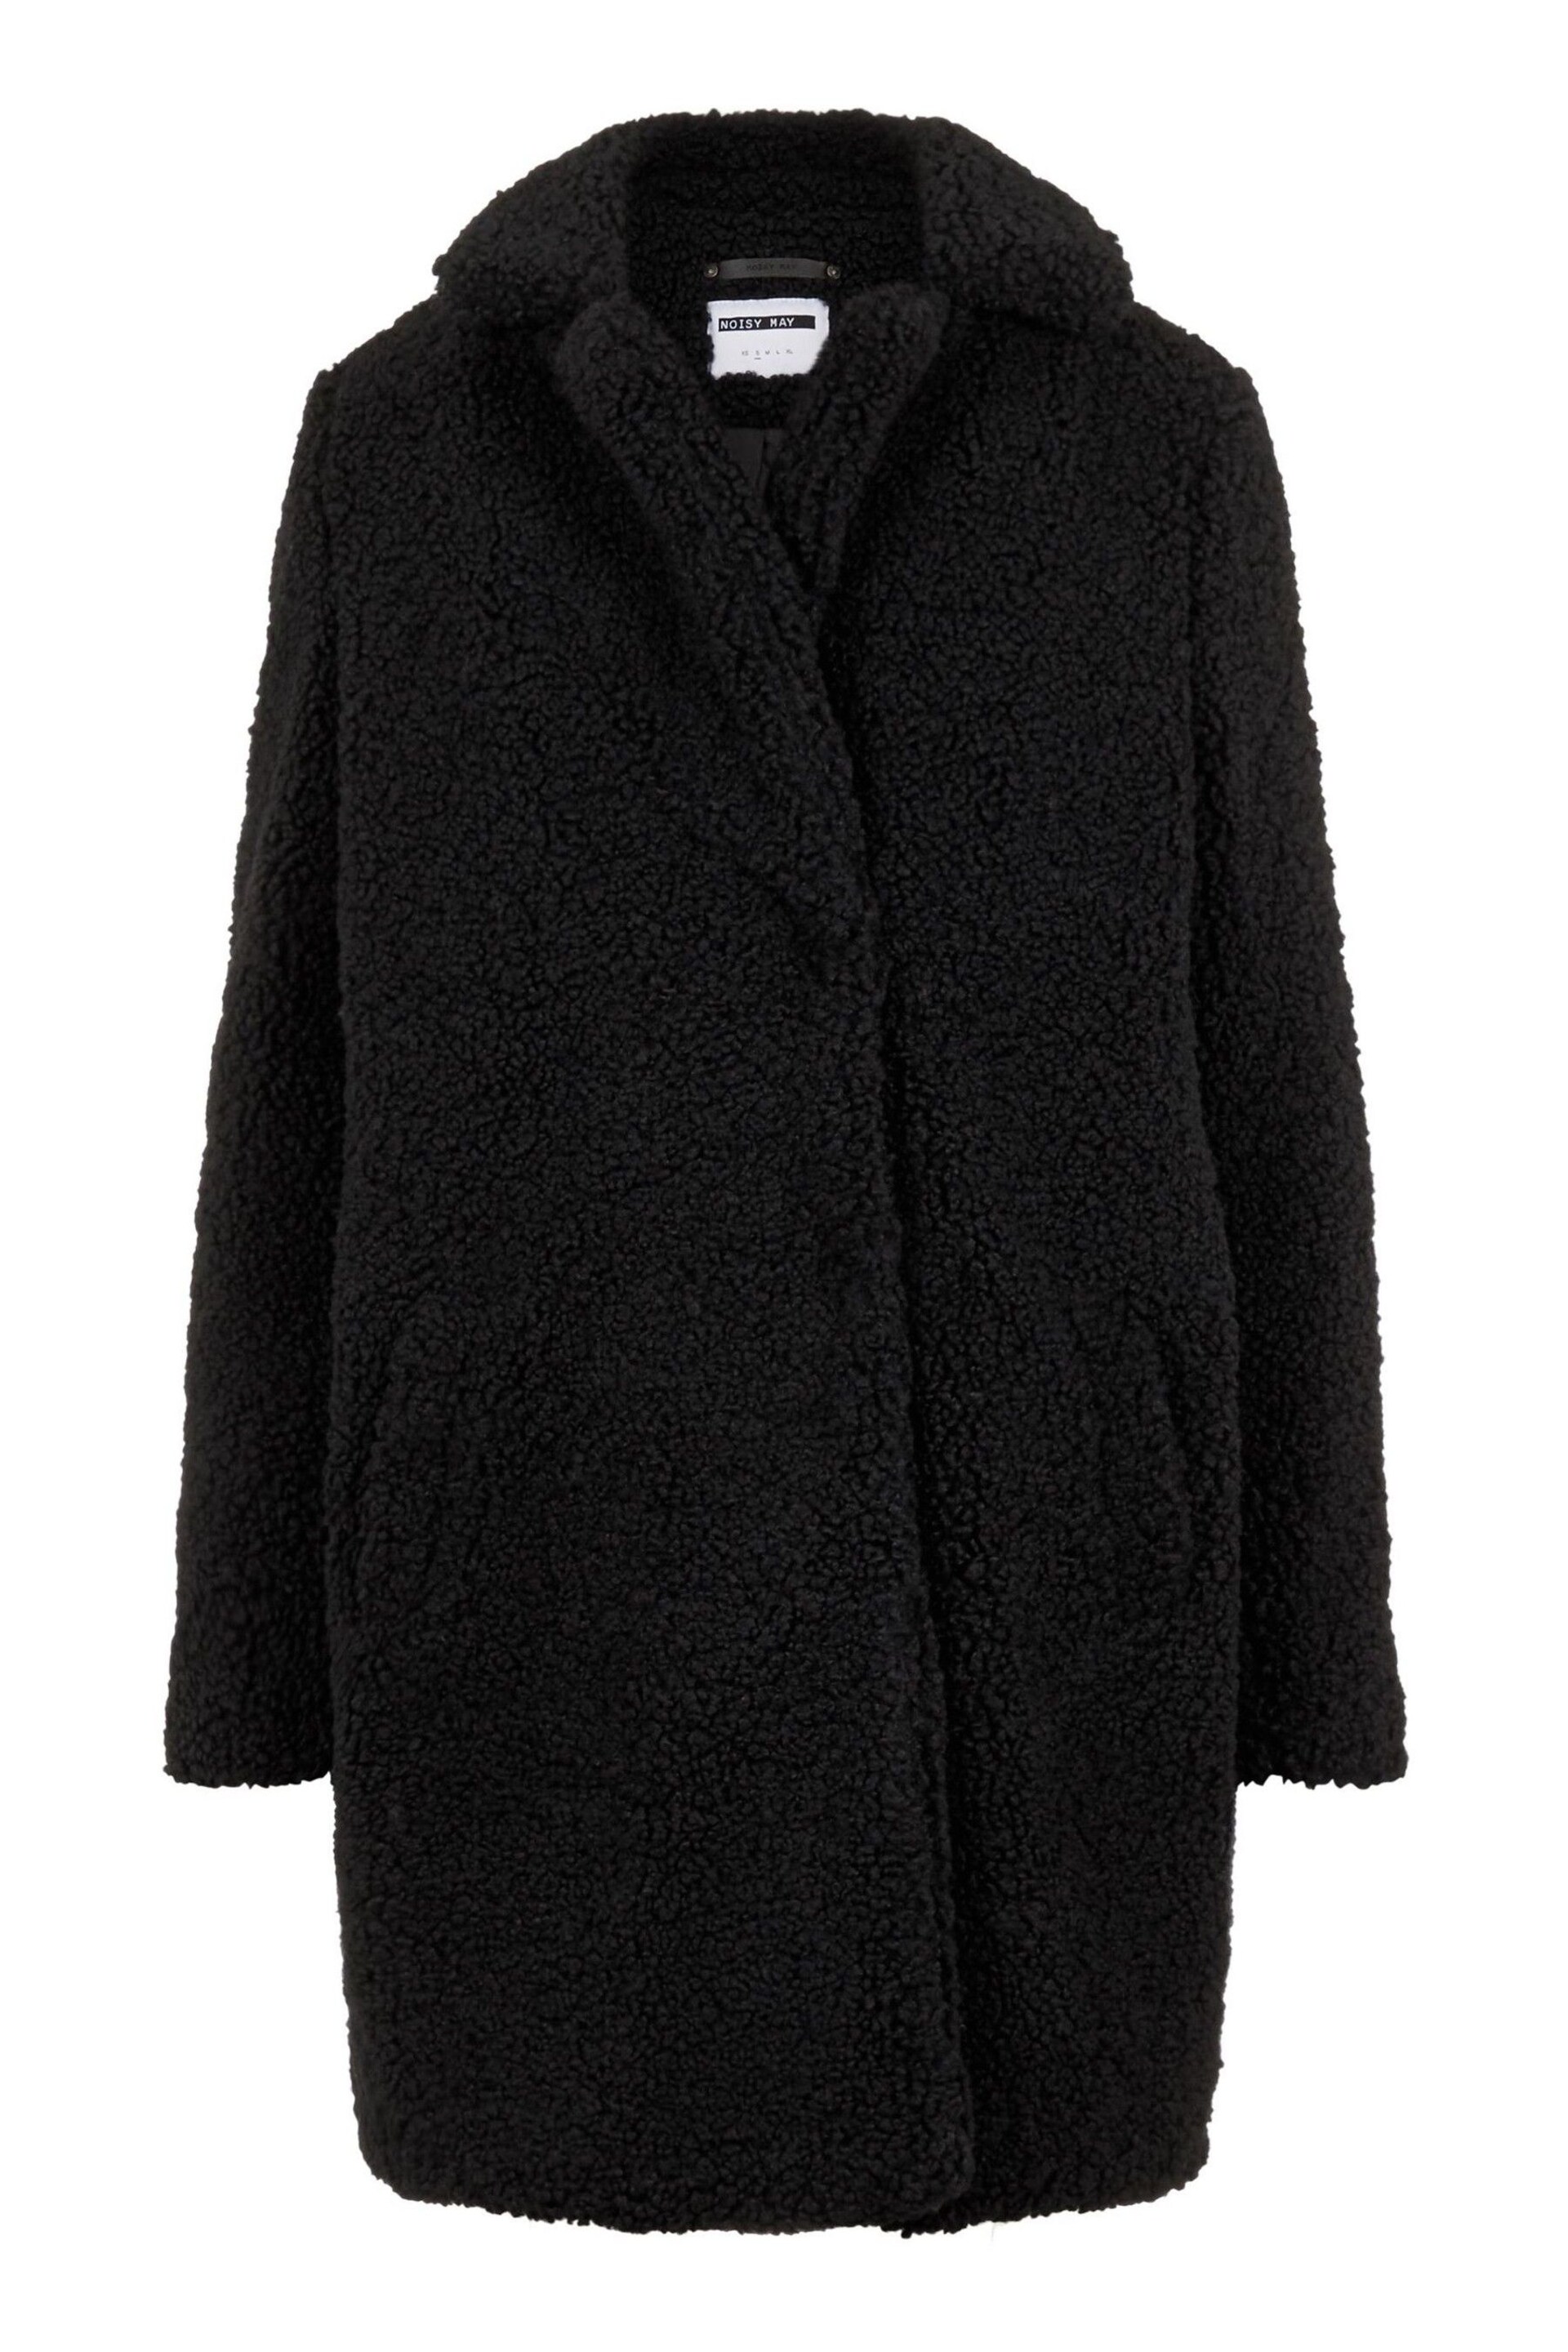 NOISY MAY Black Teddy Coat - Image 5 of 5